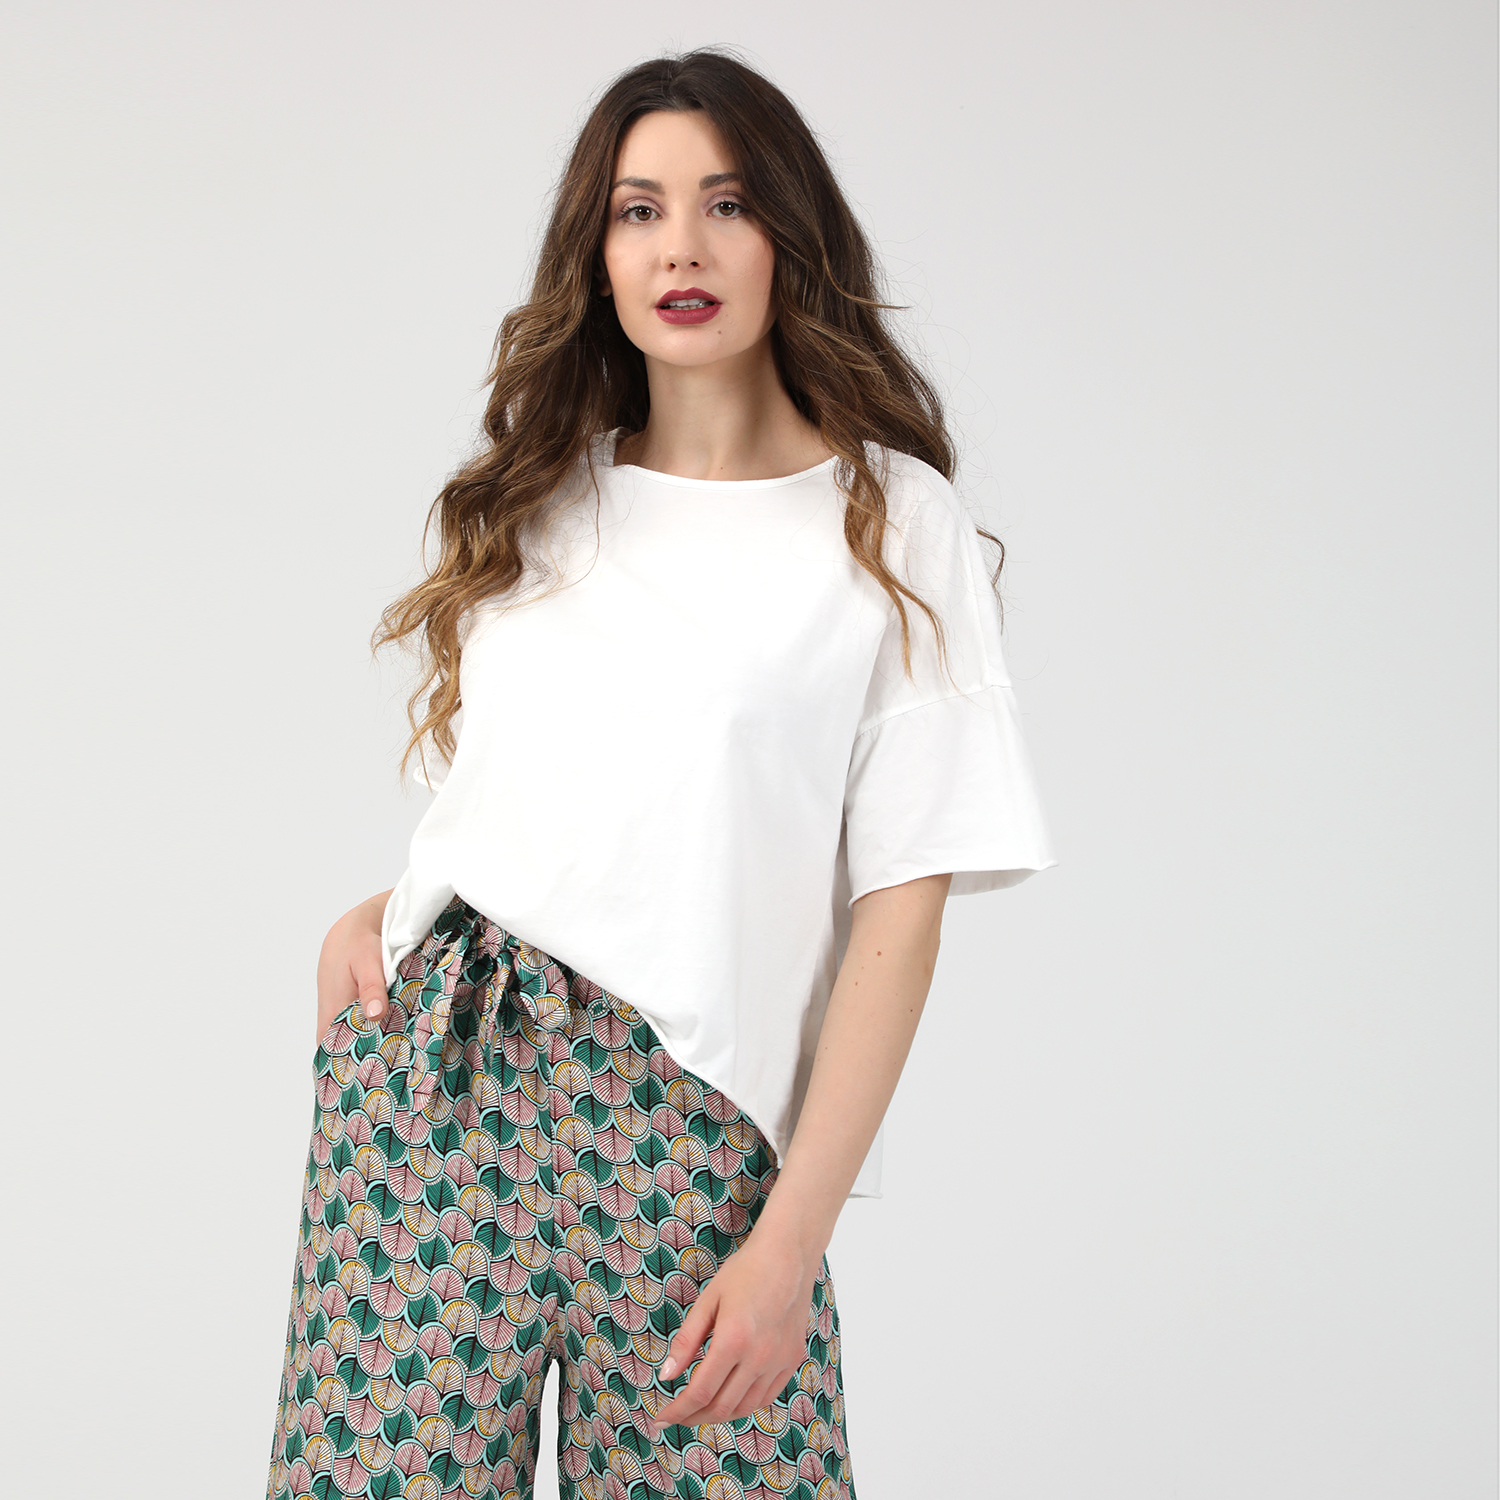 Γυναικεία/Ρούχα/Μπλούζες/Κοντομάνικες ATTRATTIVO - Γυναικεία cropped μπλούζα ATTRATTIVO λευκή